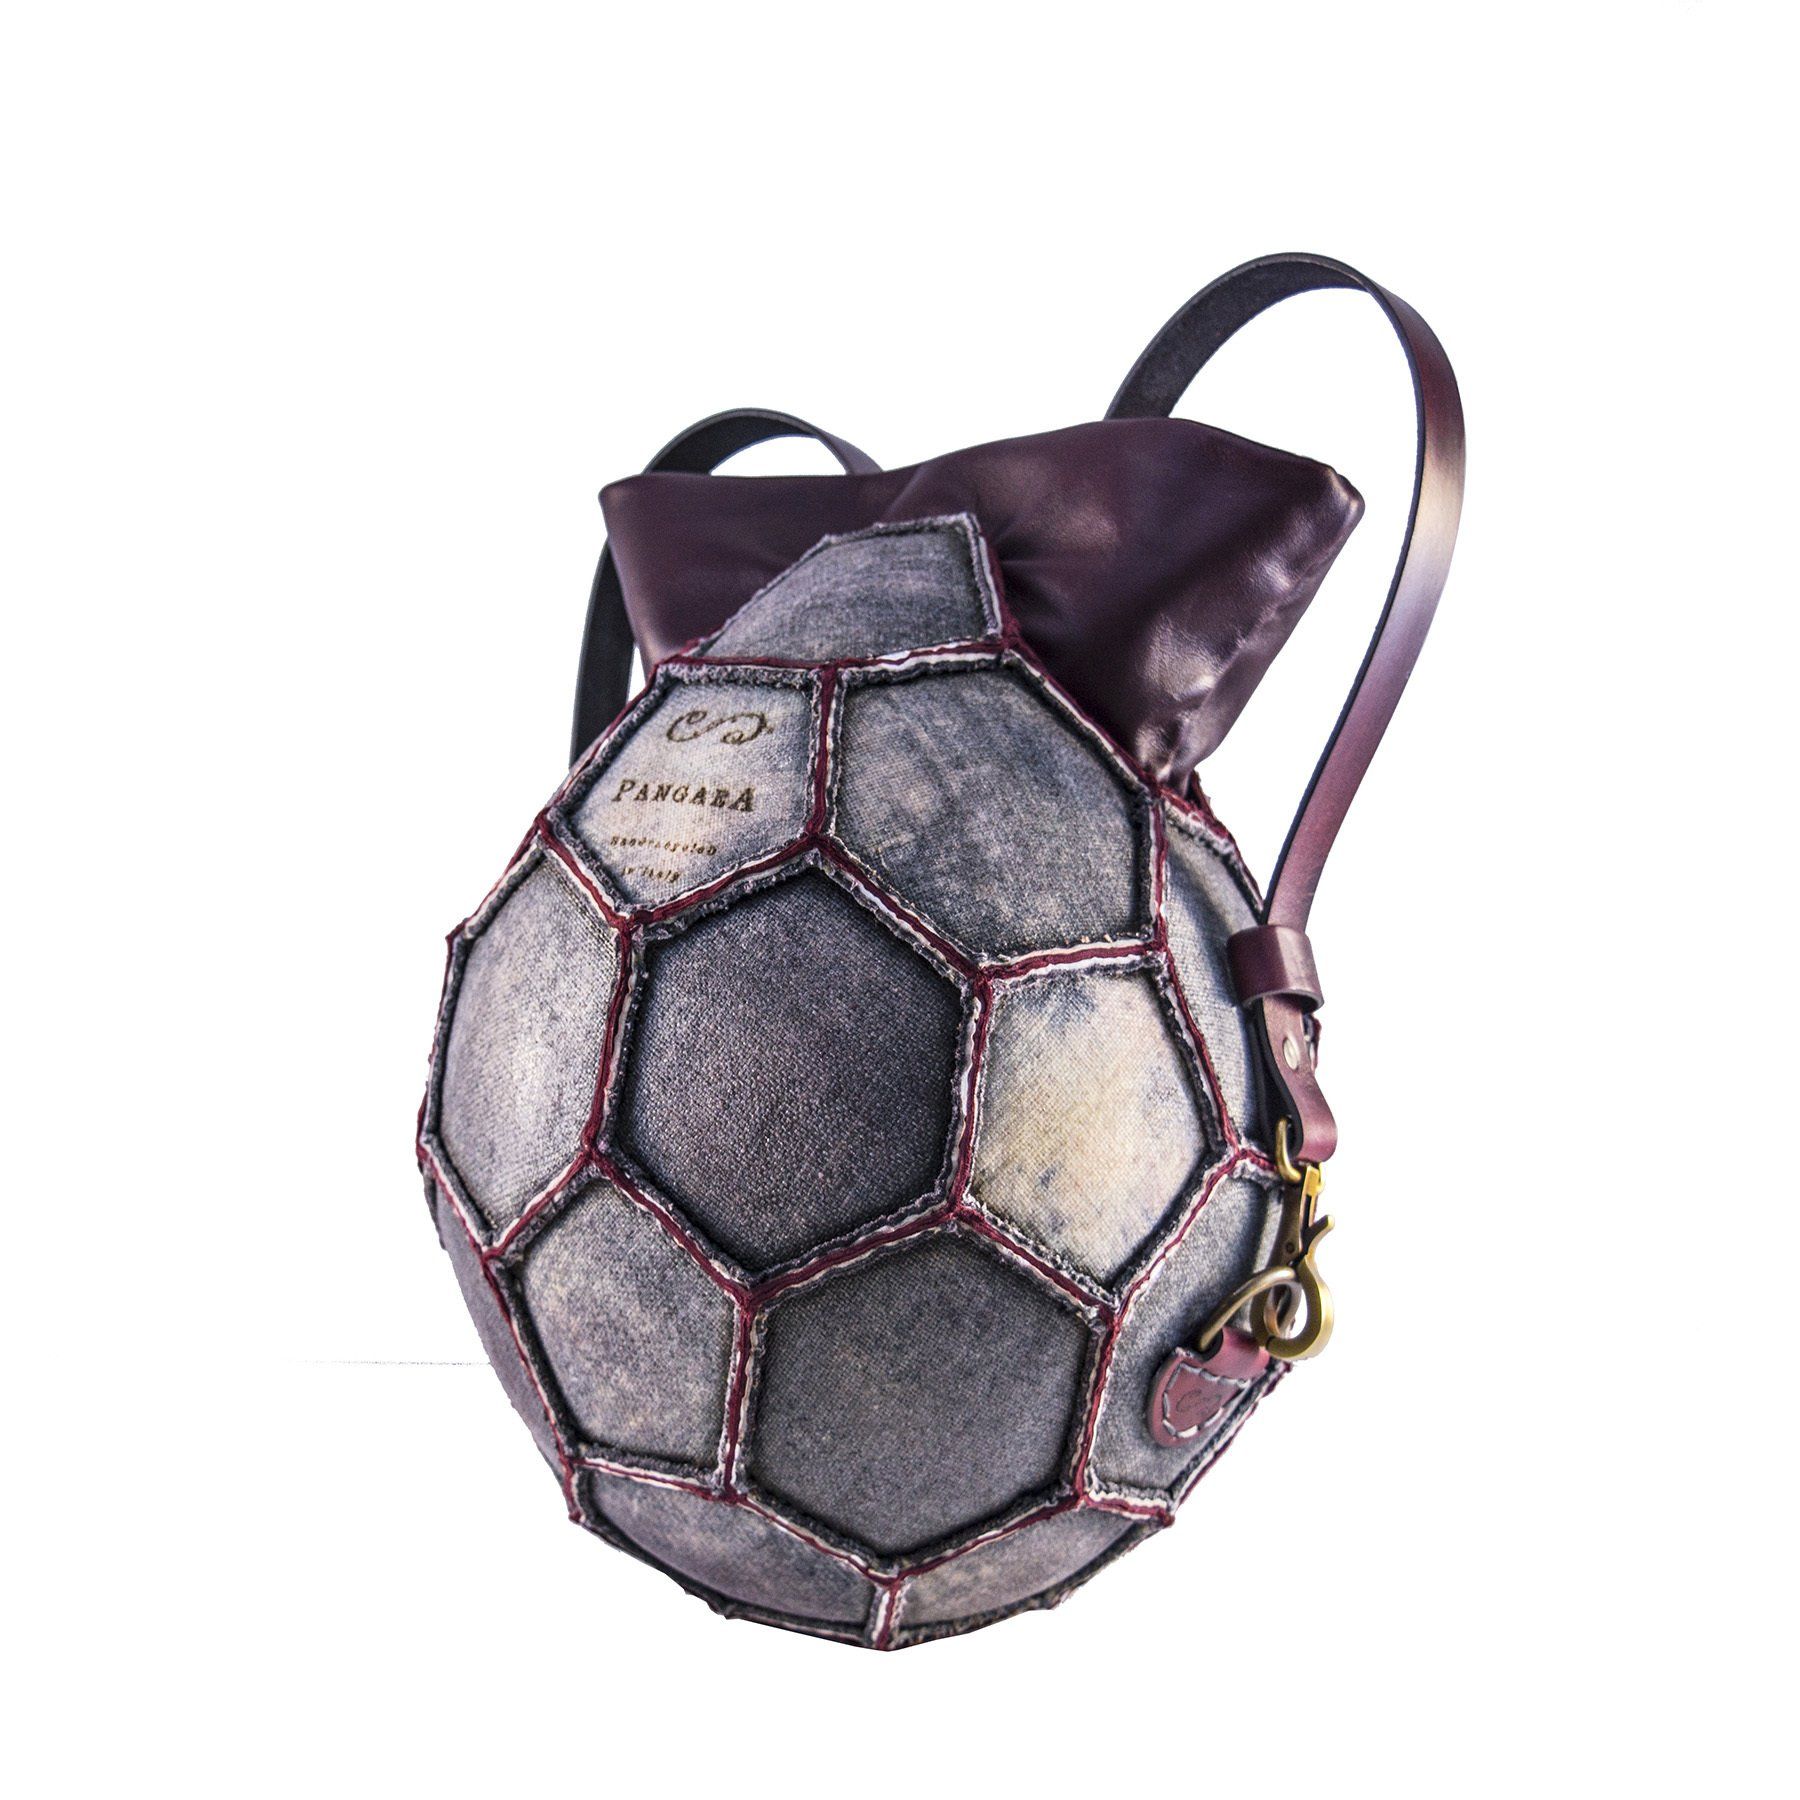 borsa palla tonda  in pelle tracolla dal riciclo del pallone da calcio bordeaux grigio grounge